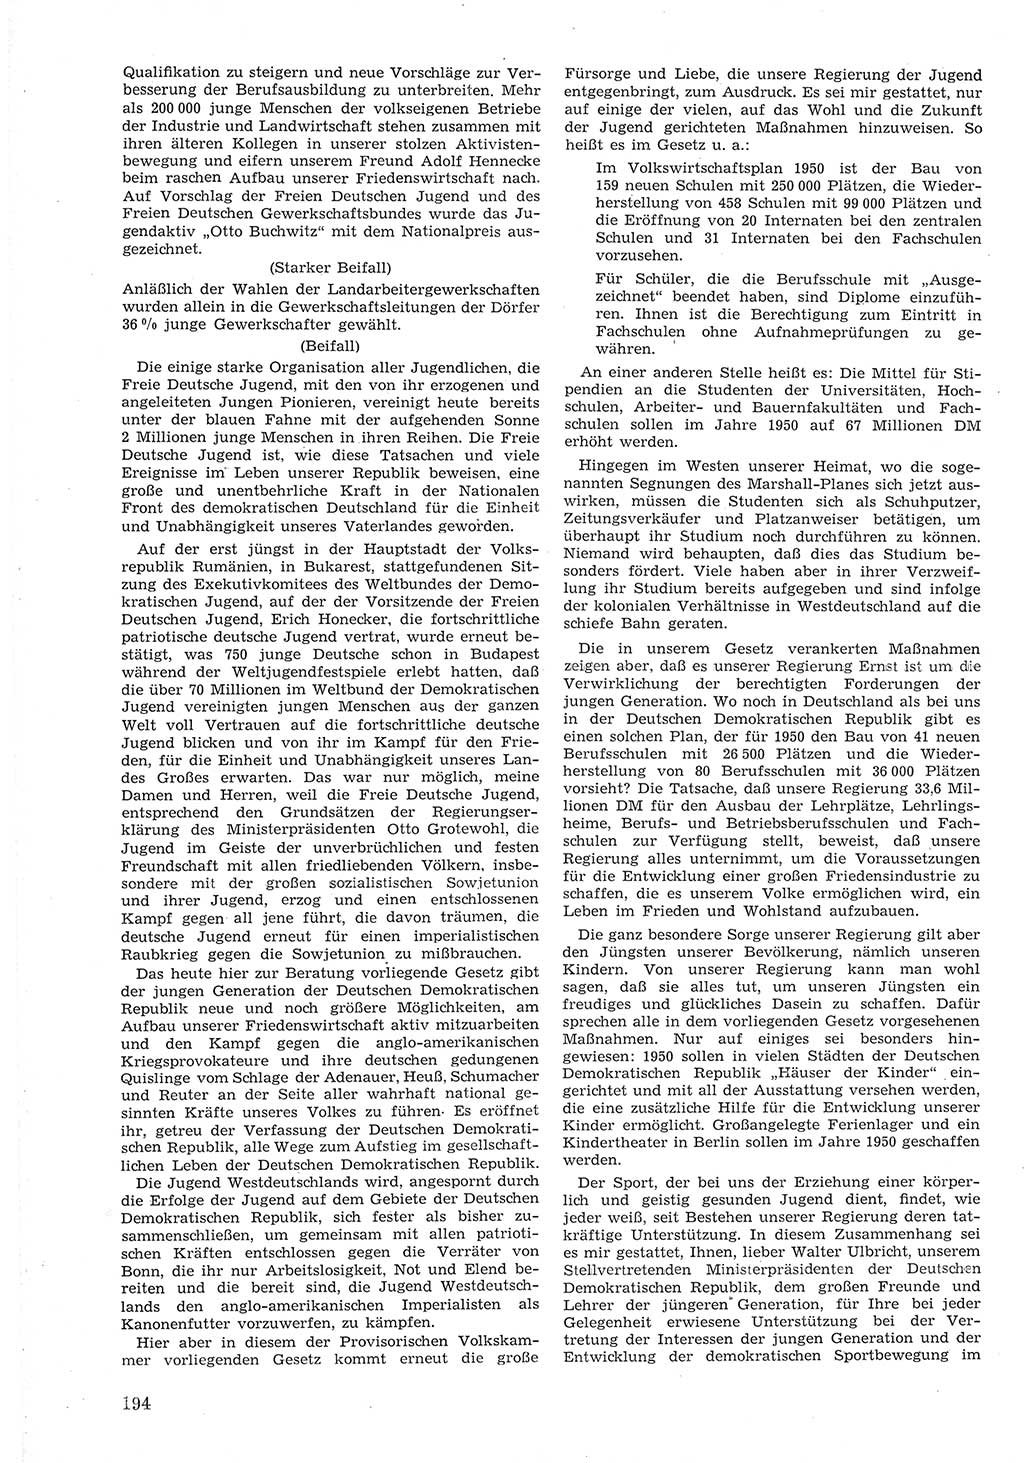 Provisorische Volkskammer (VK) der Deutschen Demokratischen Republik (DDR) 1949-1950, Dokument 206 (Prov. VK DDR 1949-1950, Dok. 206)